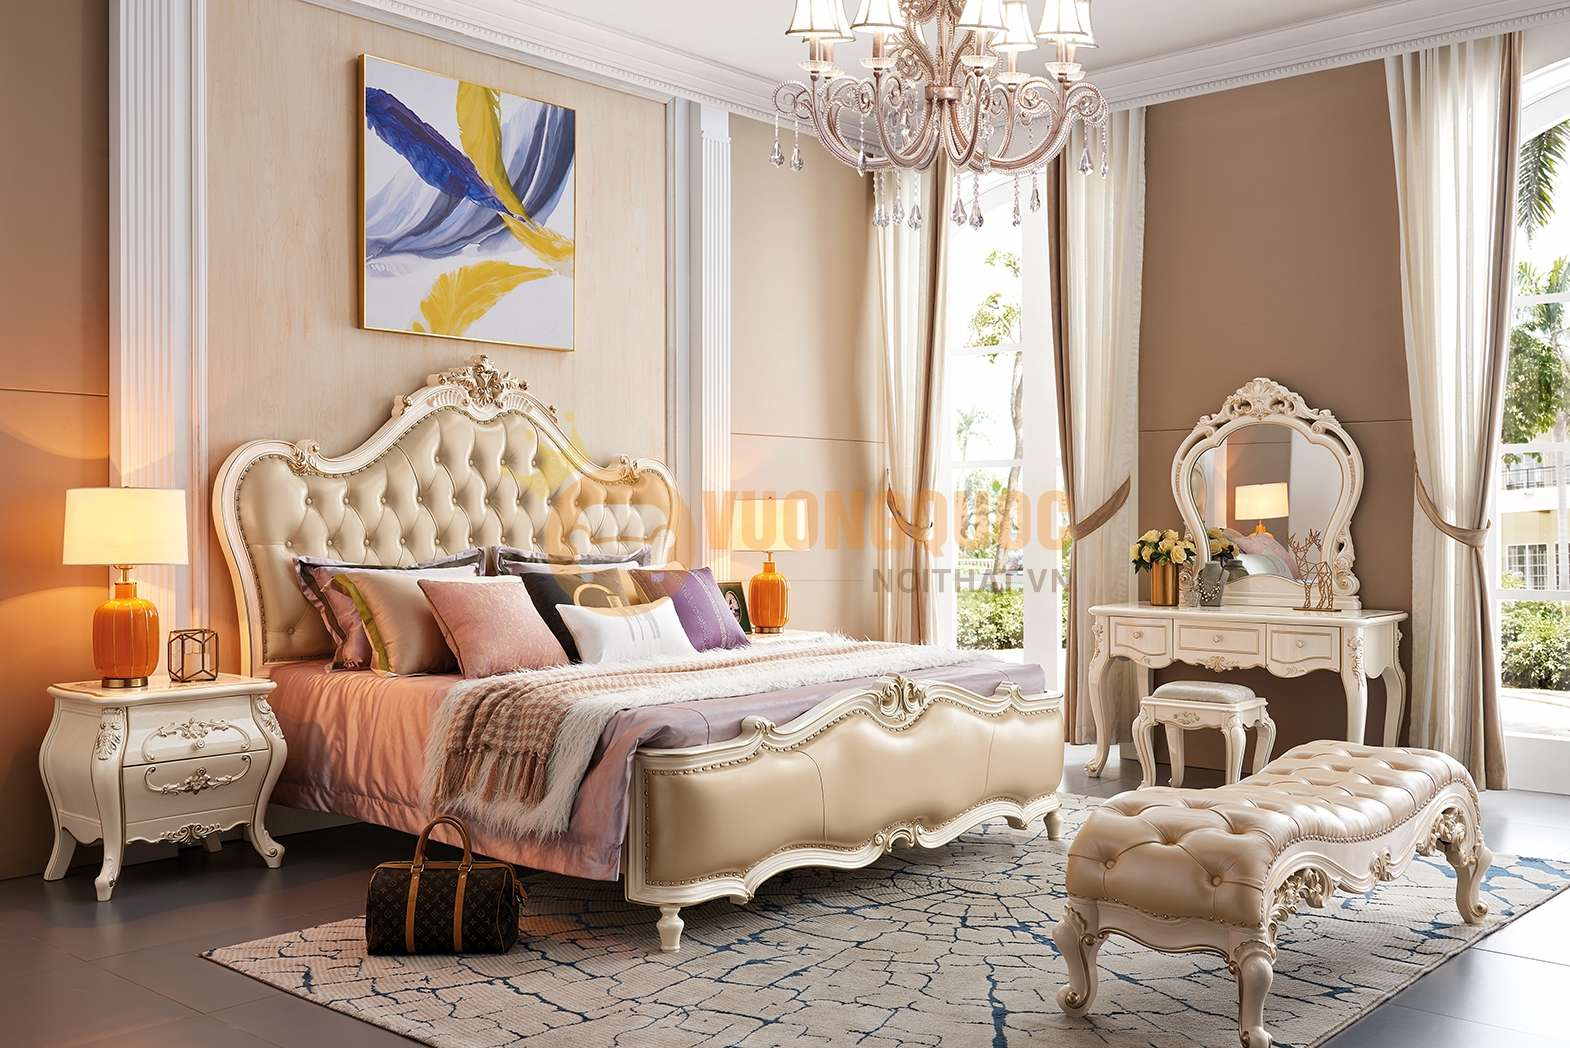 Mẫu giường gỗ đẹp nhất 2022 phong cách tân cổ điển